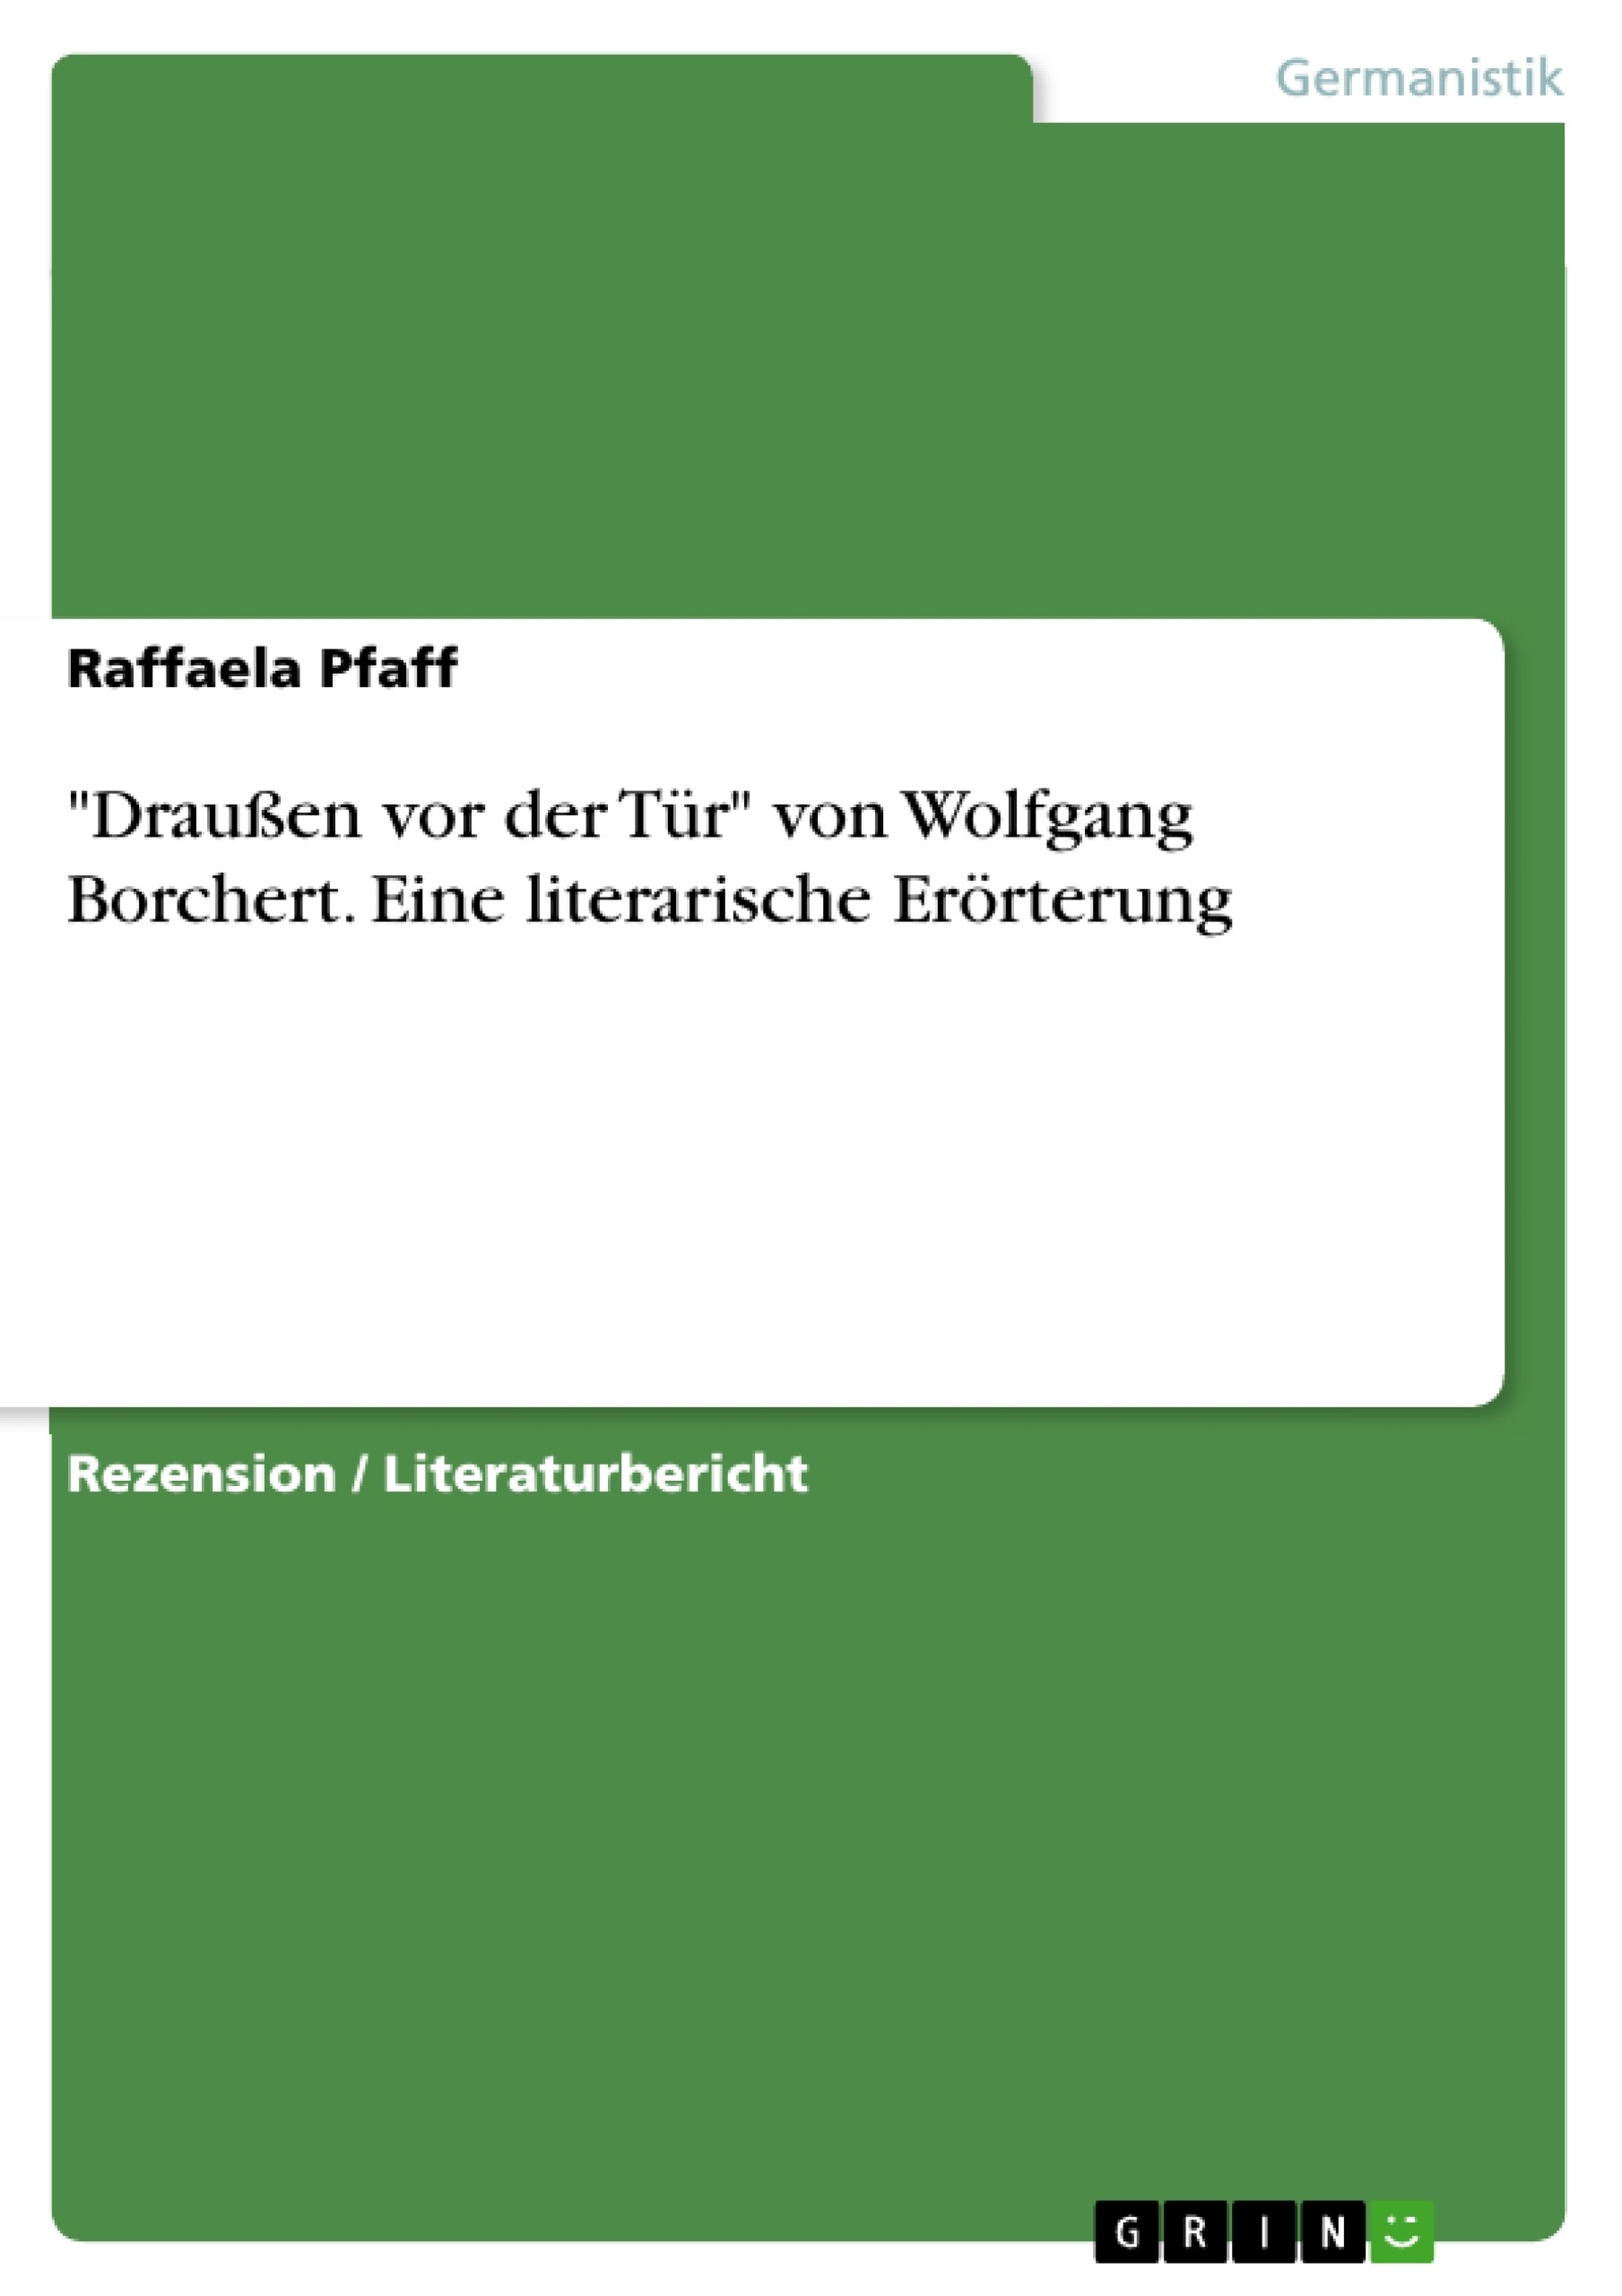 Título: "Draußen vor der Tür" von Wolfgang Borchert. Eine literarische Erörterung